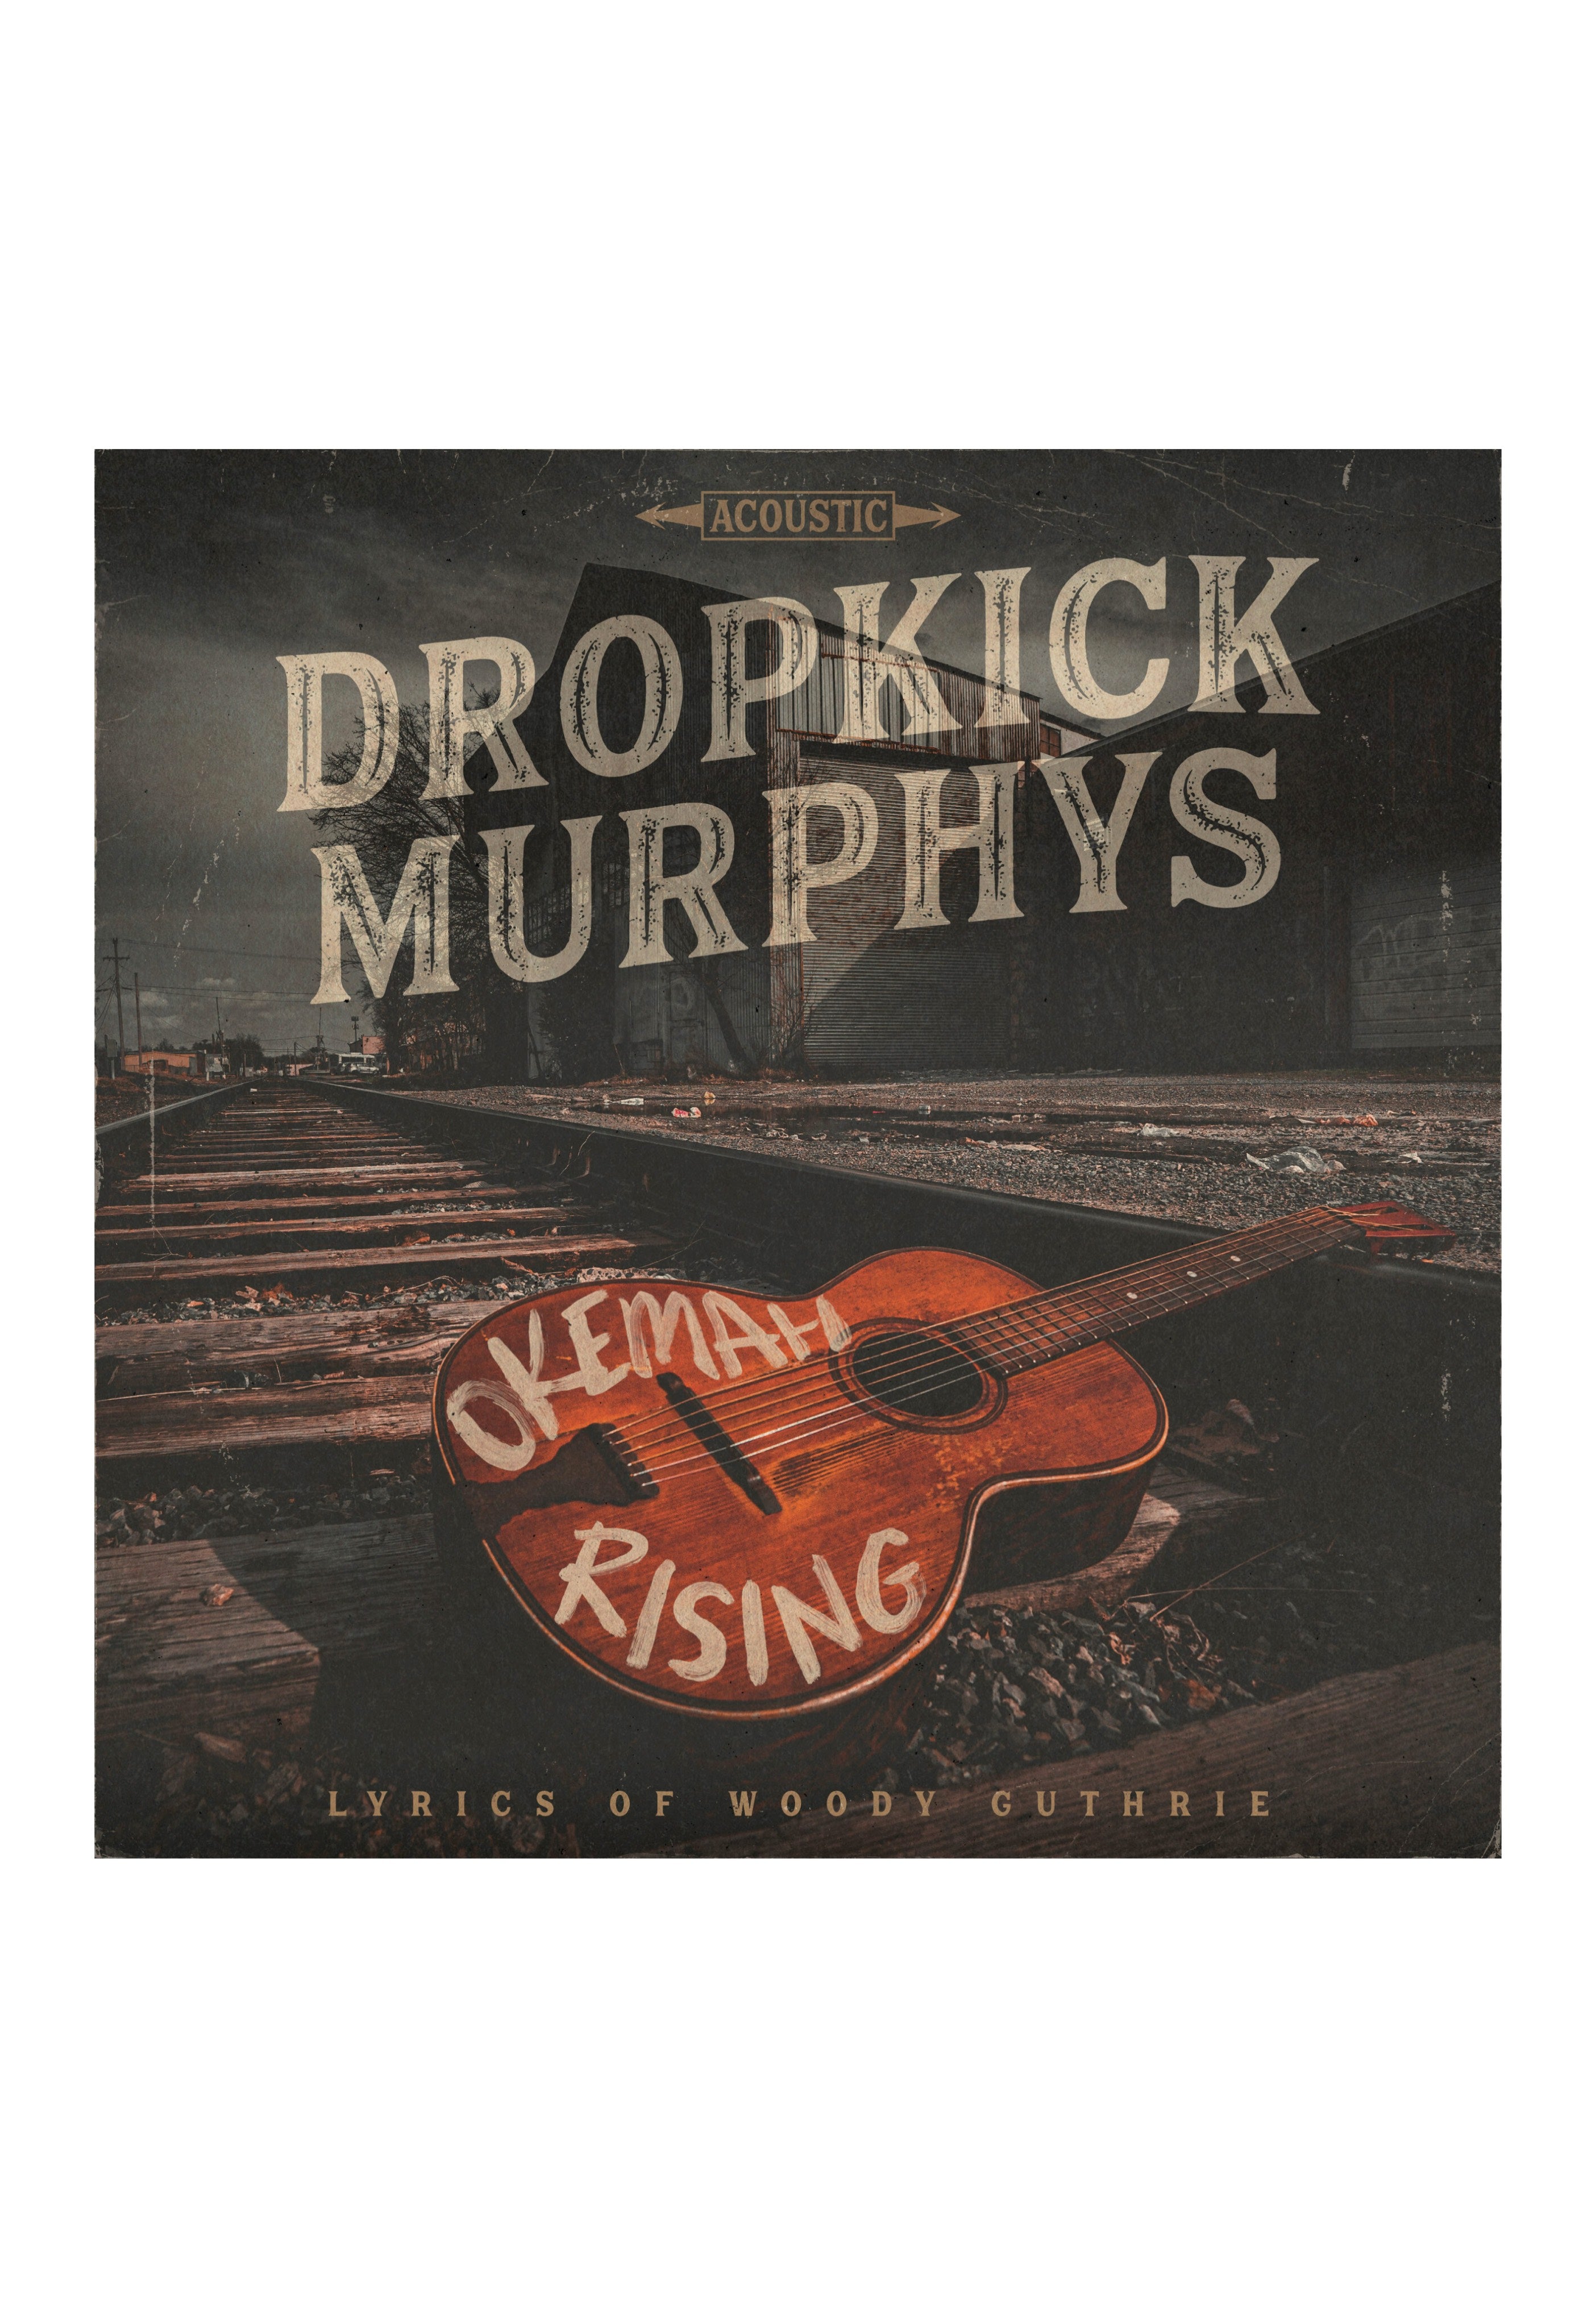 Dropkick Murphys - Okemah Rising - Digipak CD